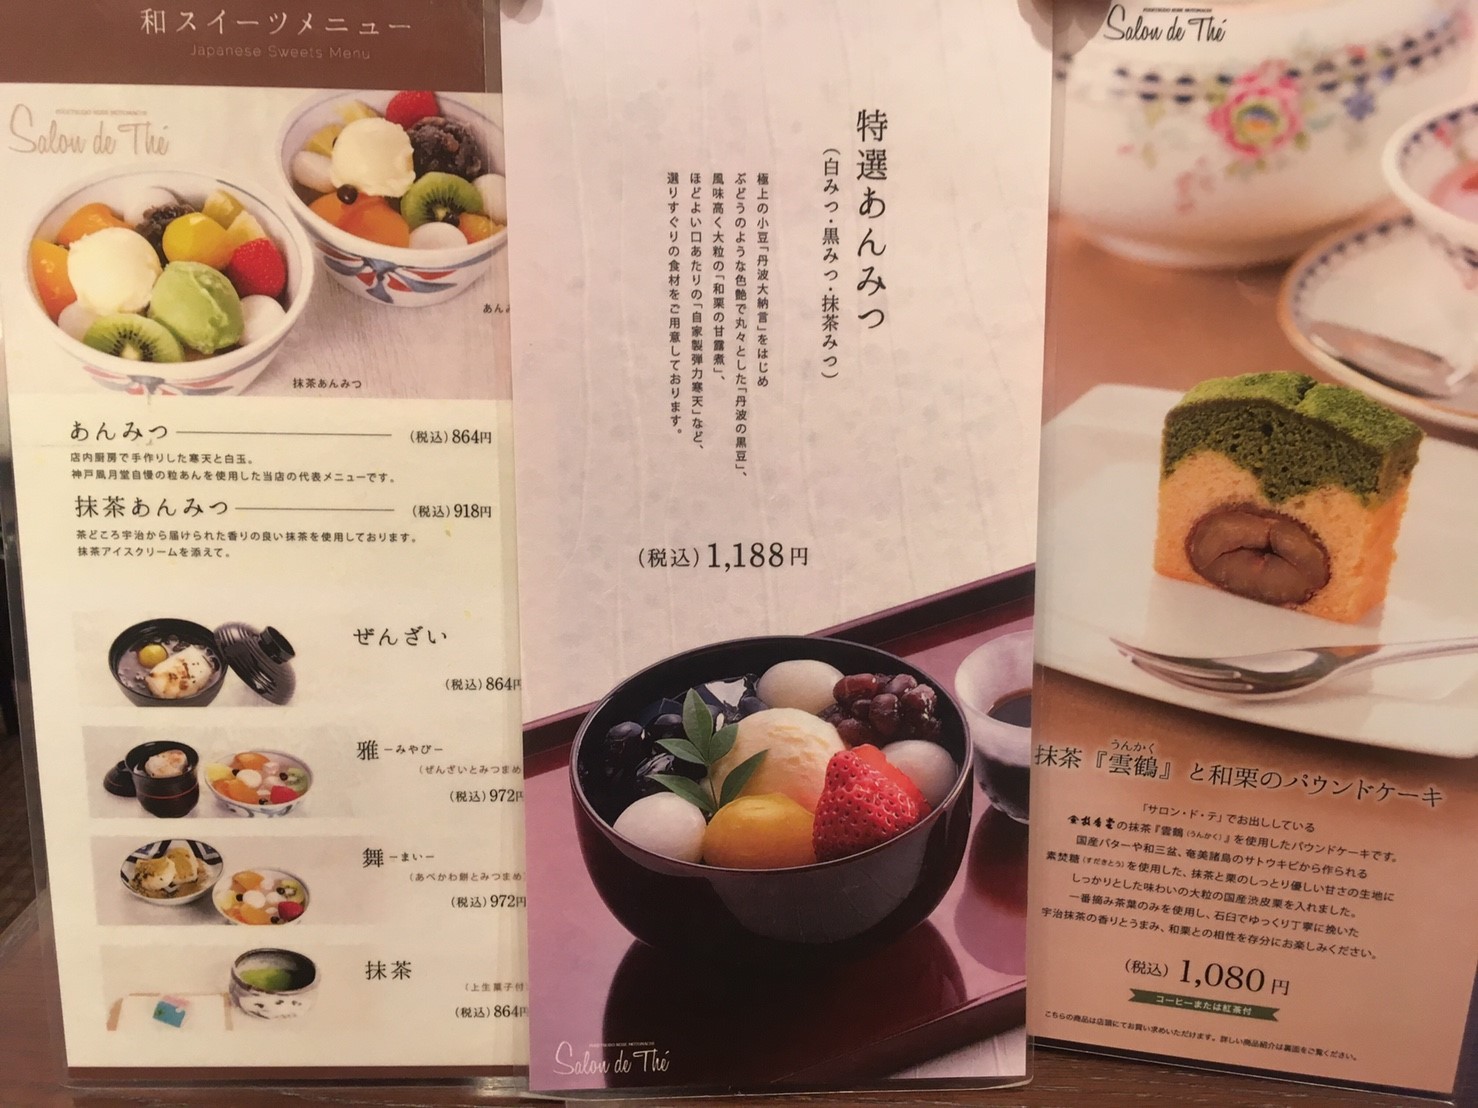 神戸風月堂 1年の歴史をもつ老舗の元町本店で 和スイーツを食べる こべログ